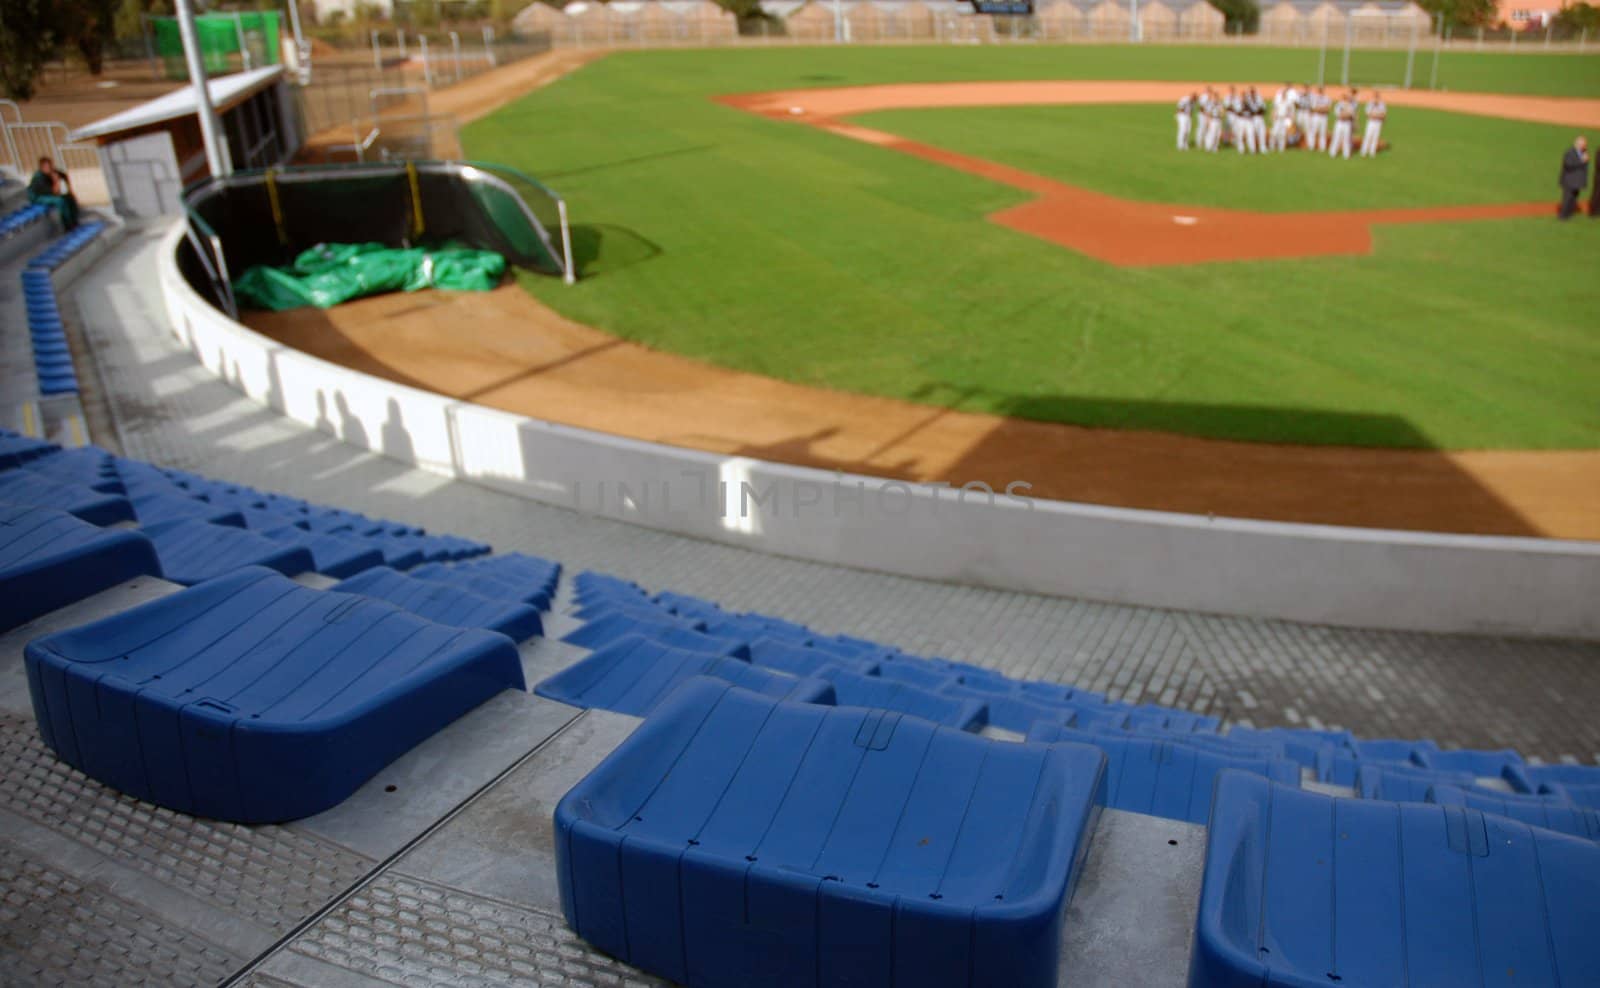 Blue seats in an empty stadium by haak78